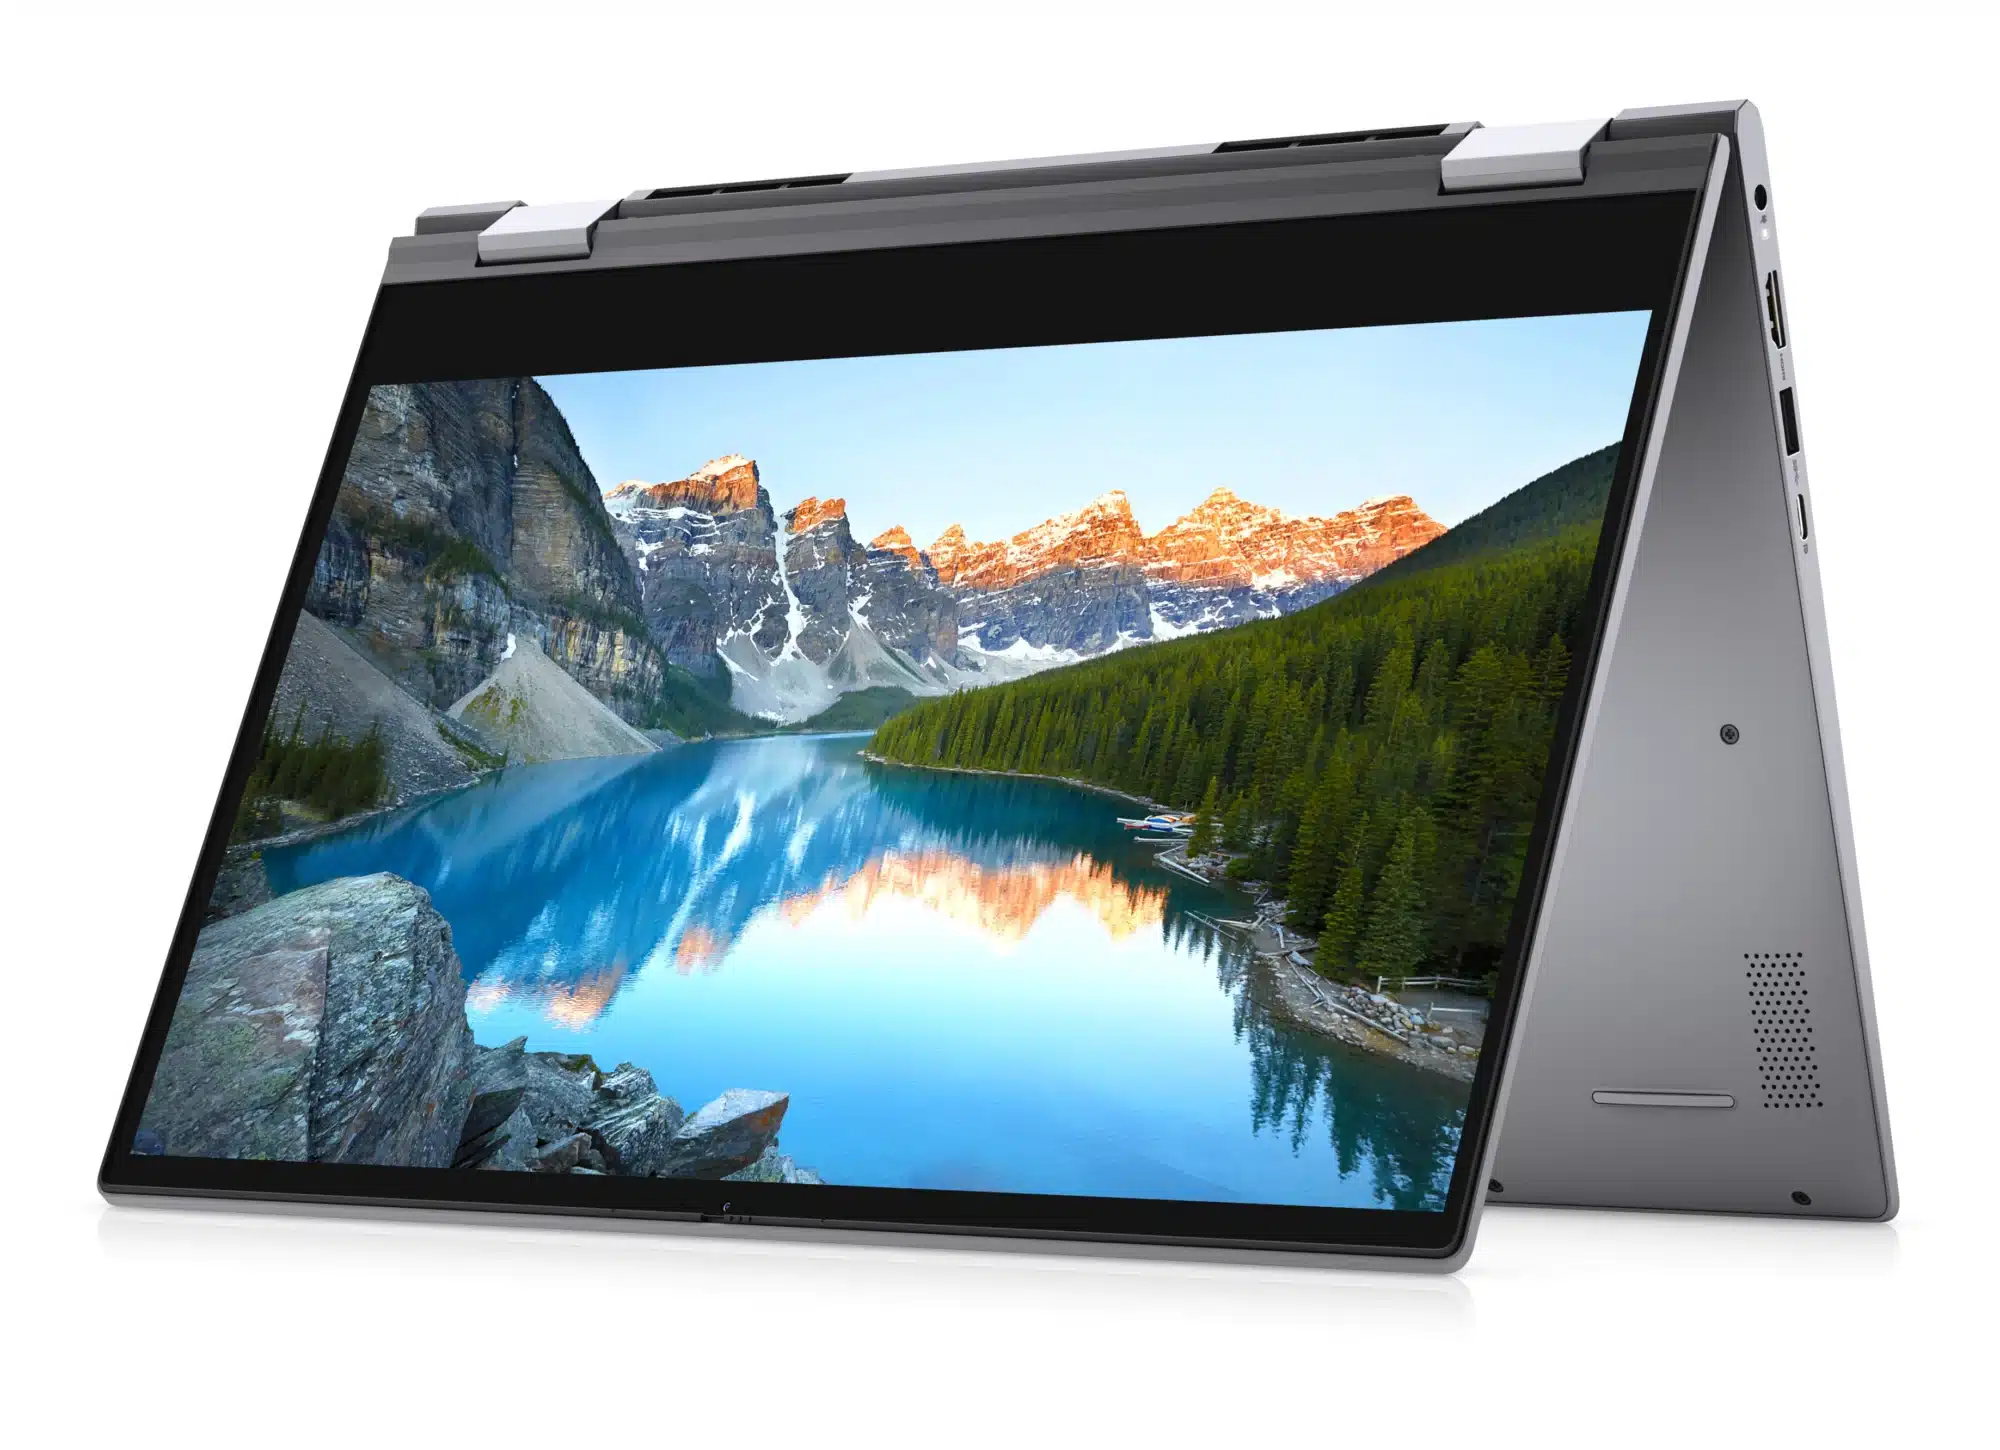 2合1筆電 Dell Inspiron 14 5000 Laptop